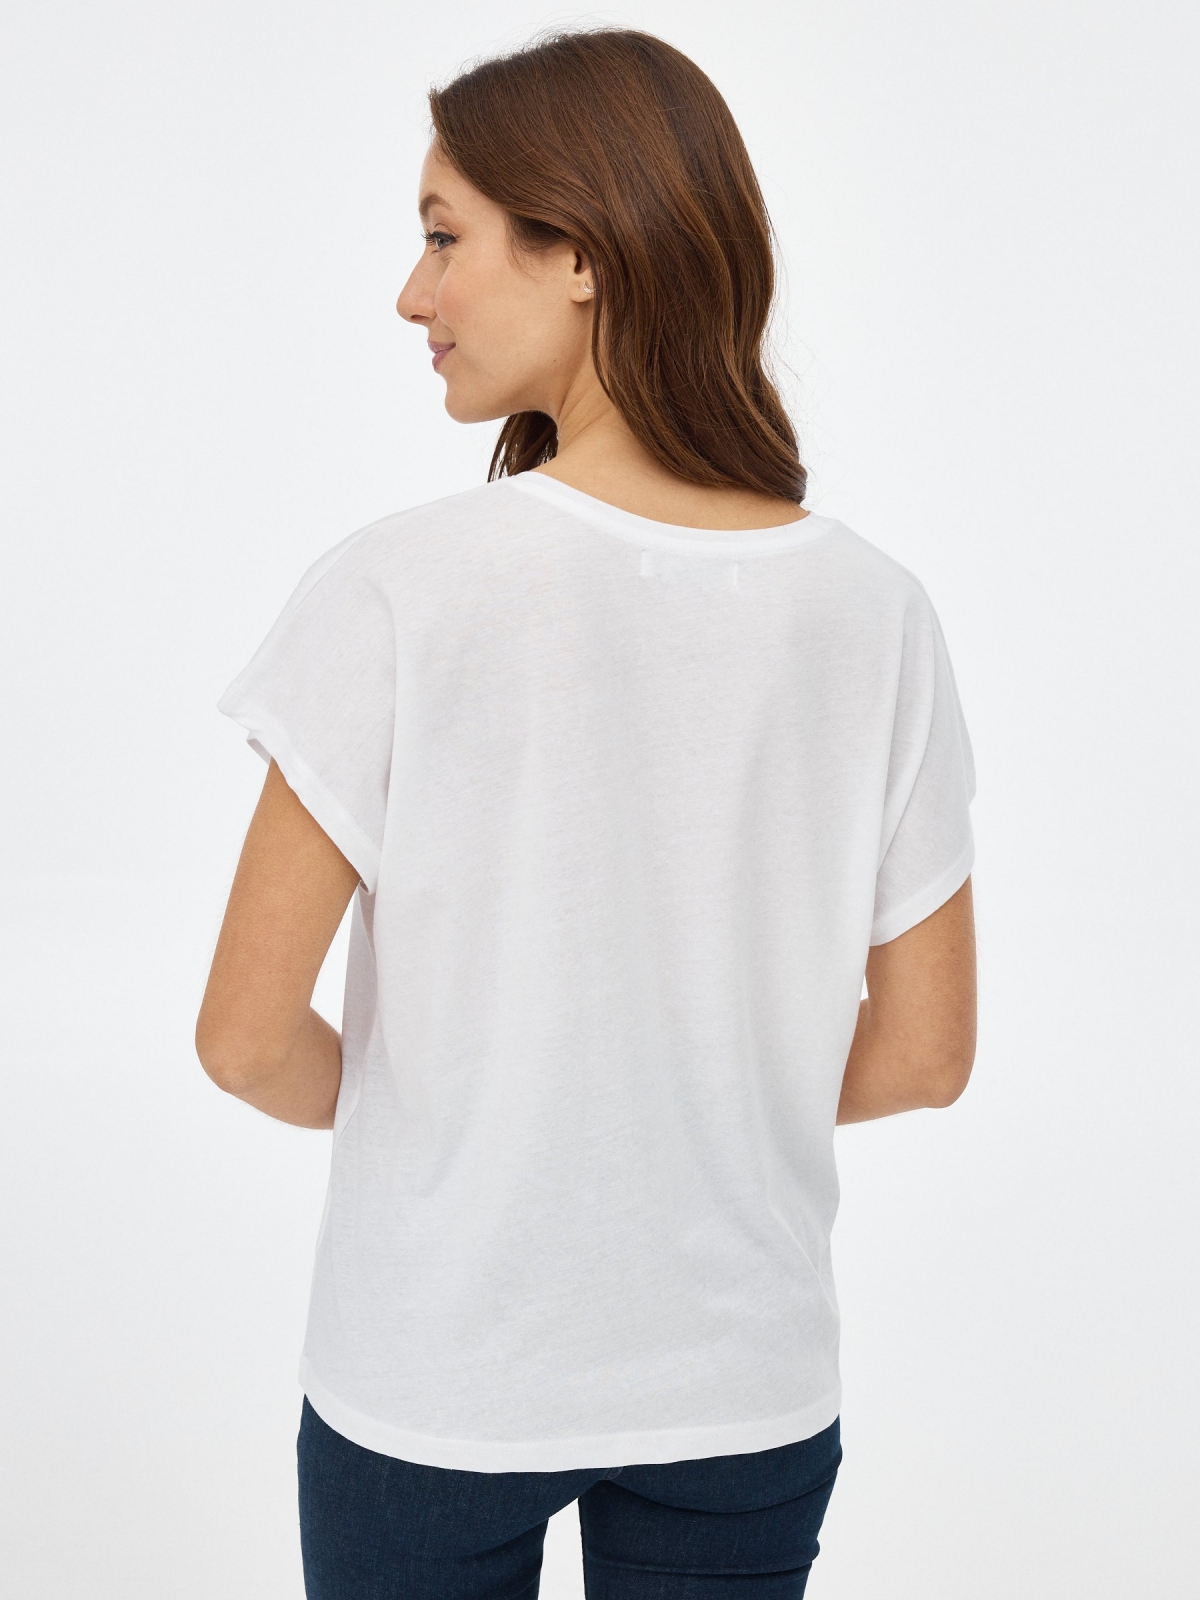 Camiseta con estampado blanco vista media trasera